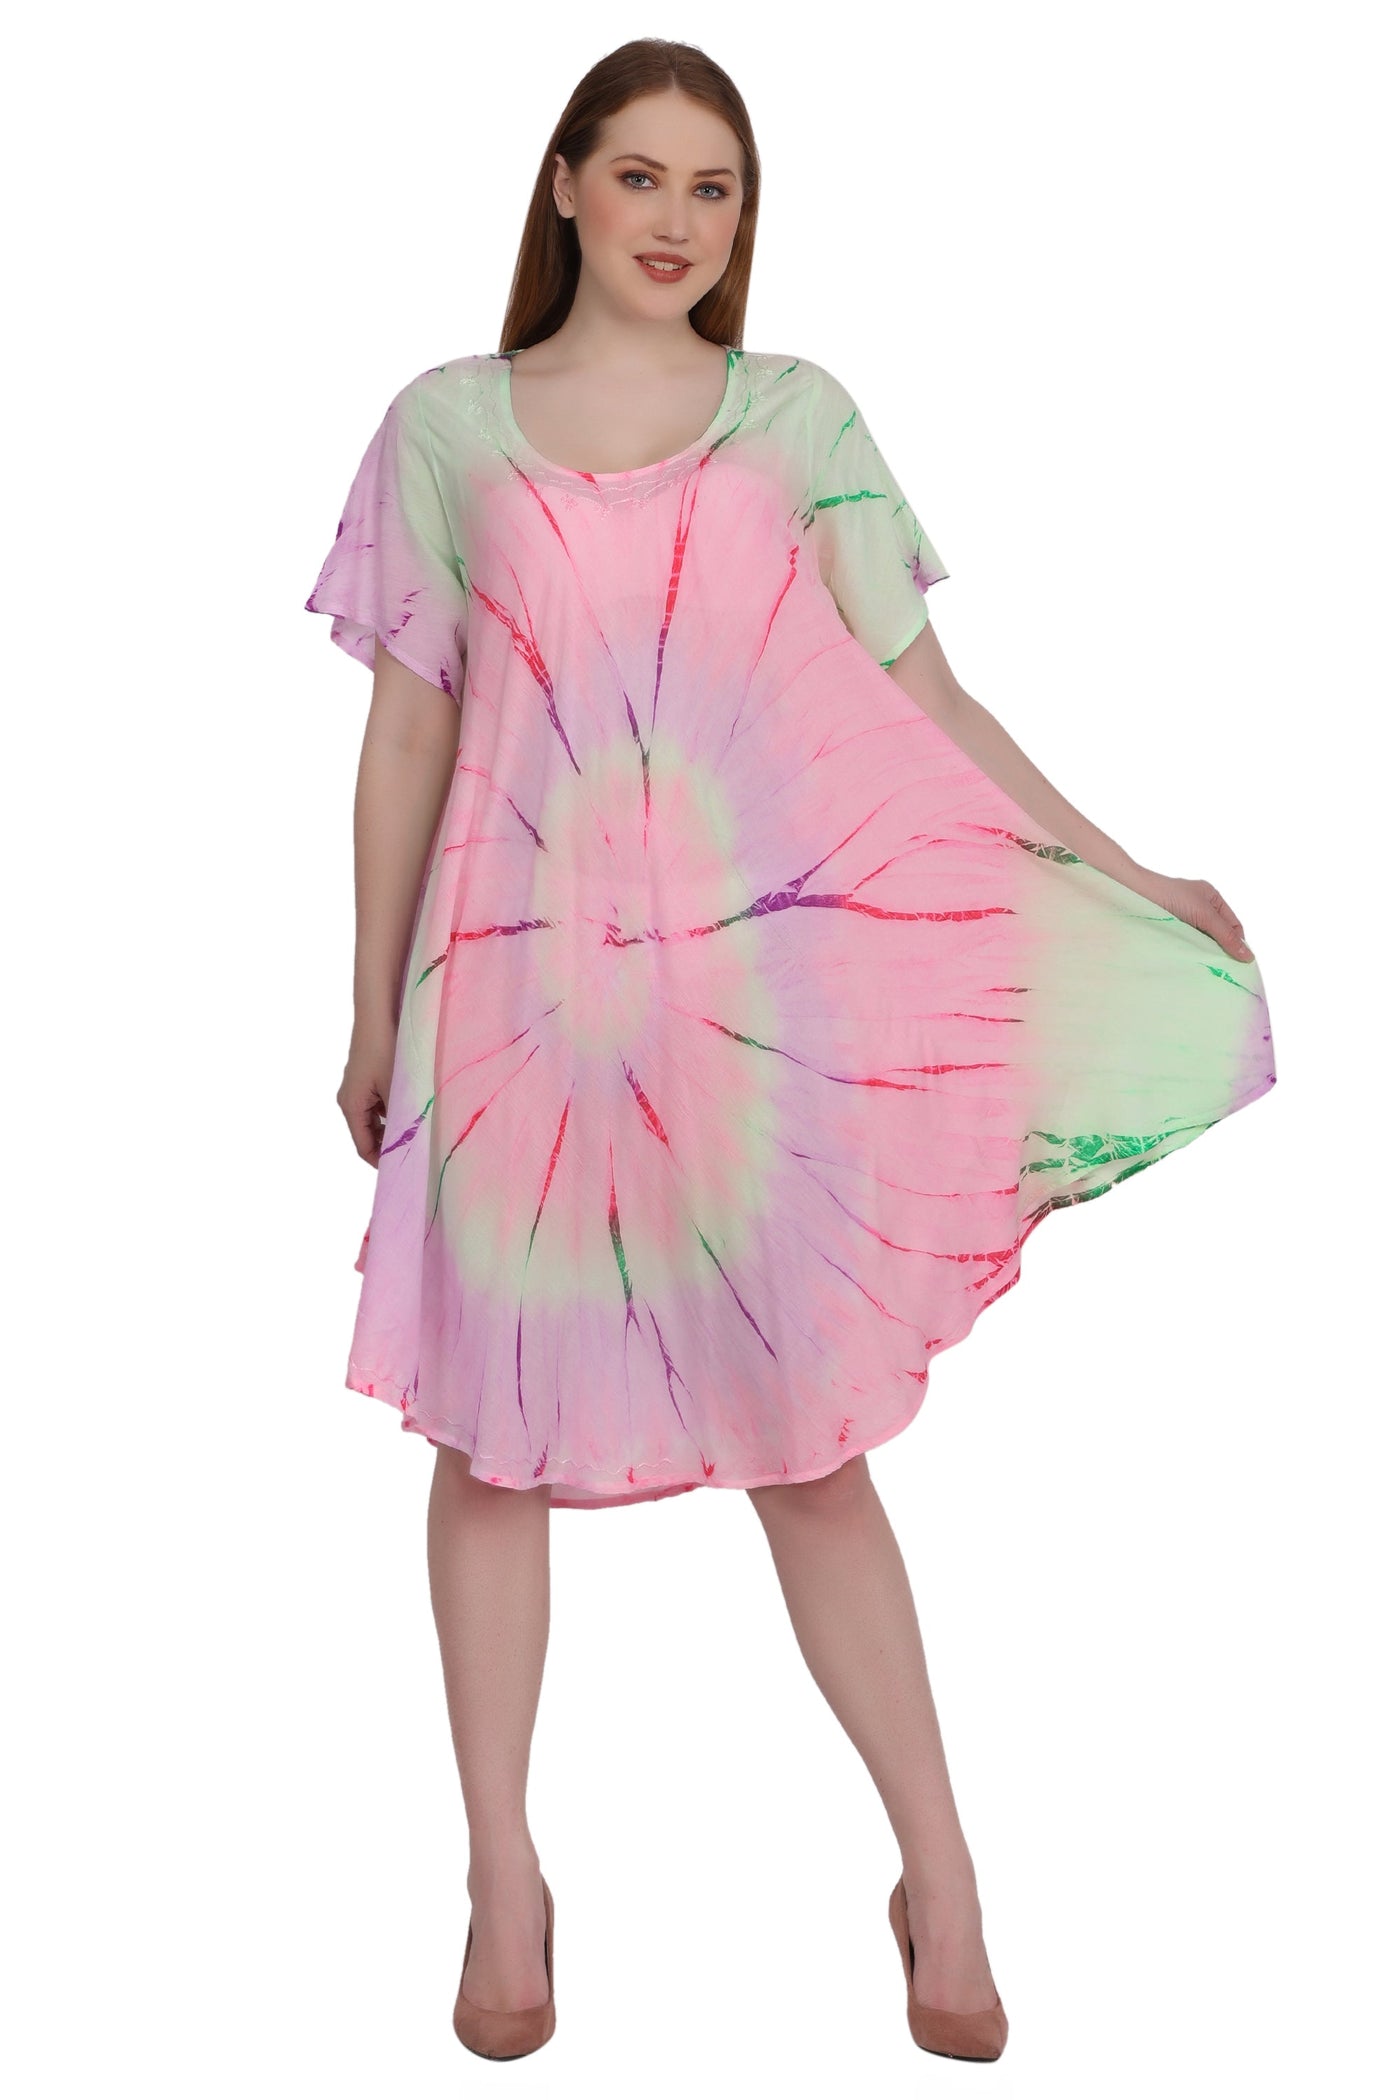 Neon Tie Dye Cap Sleeve Dress 442128